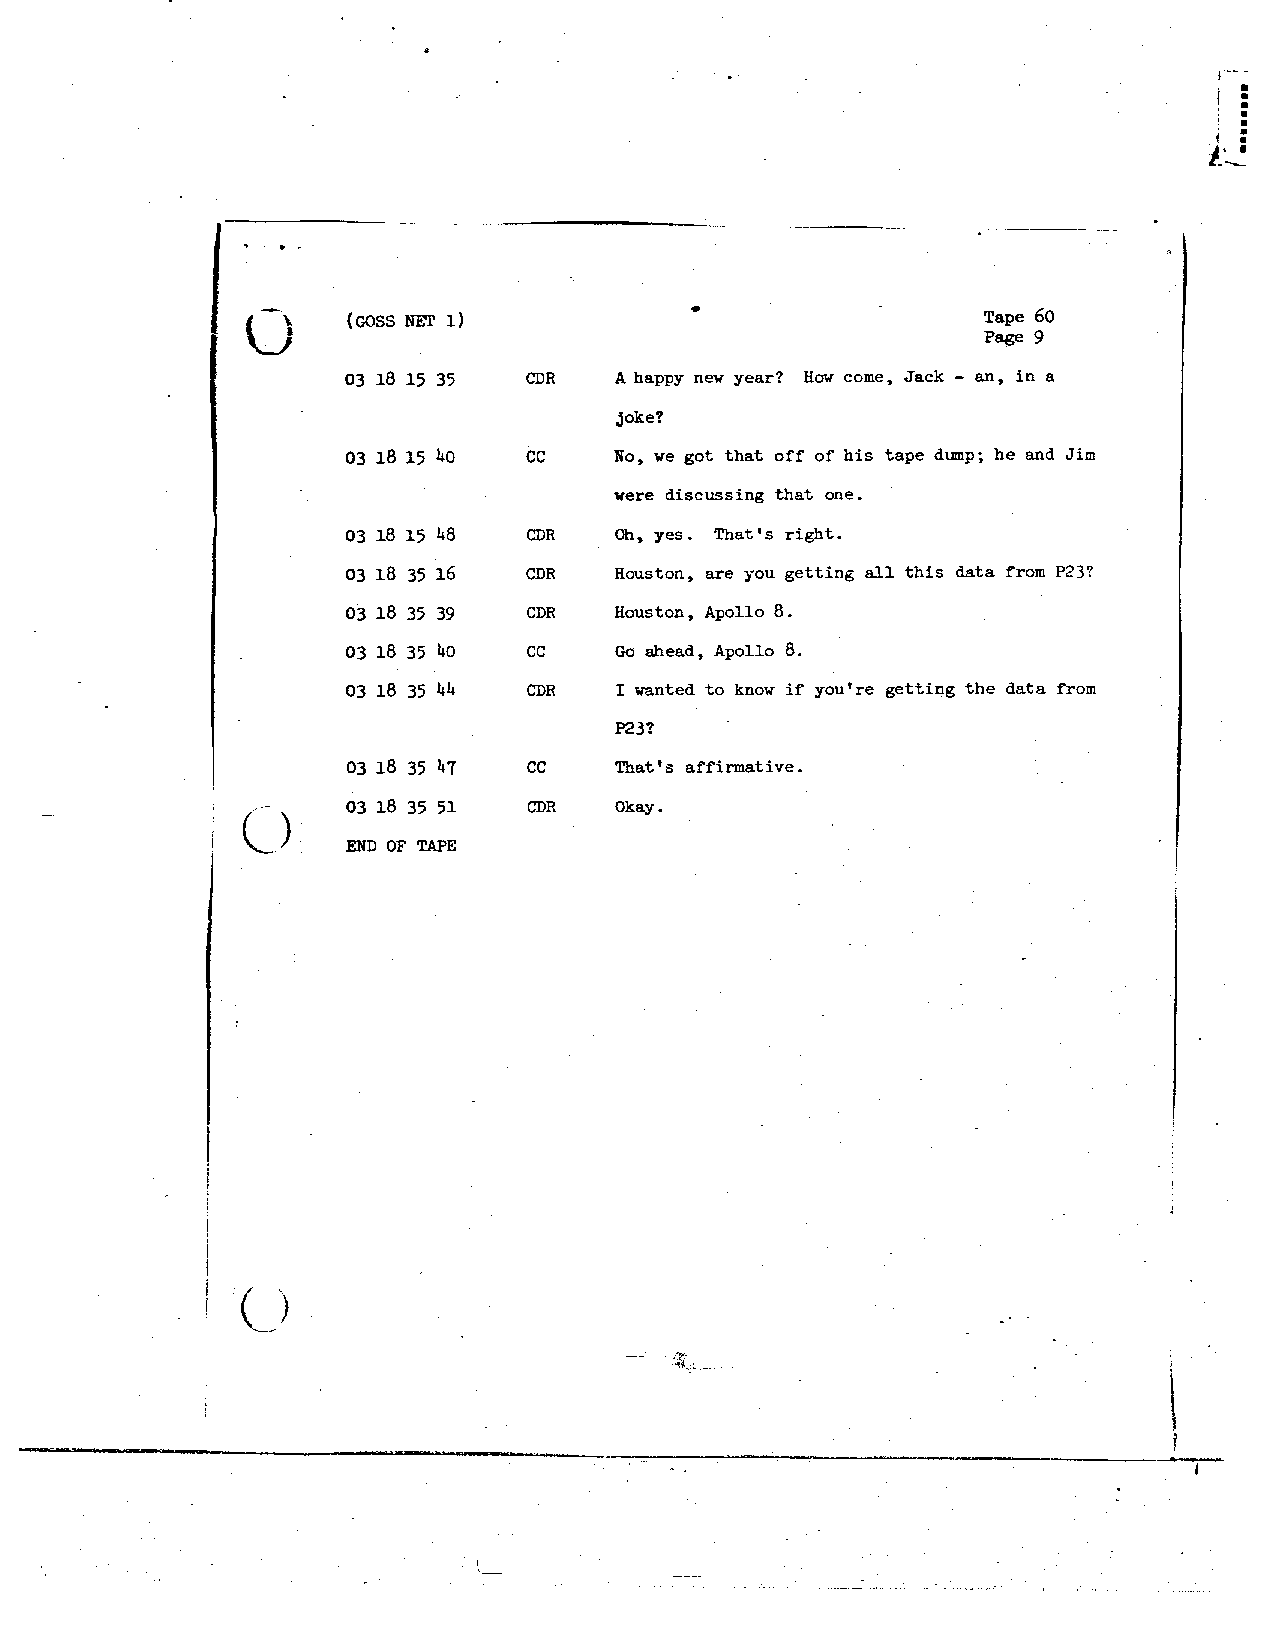 Page 484 of Apollo 8’s original transcript